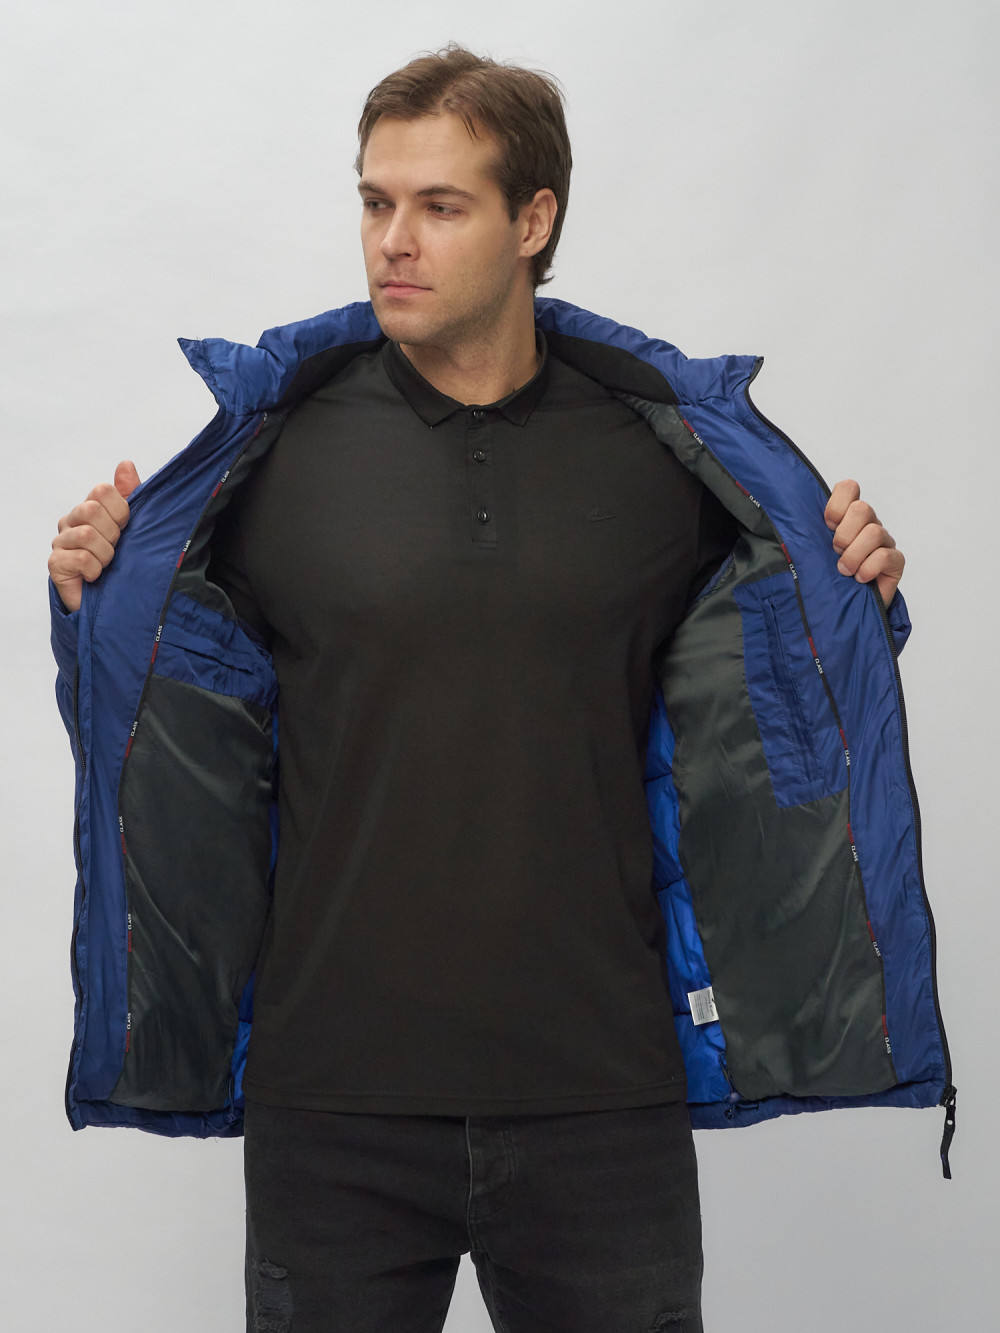 Купить куртку мужскую спортивную весеннюю оптом от производителя недорого в Москве 62186S 1